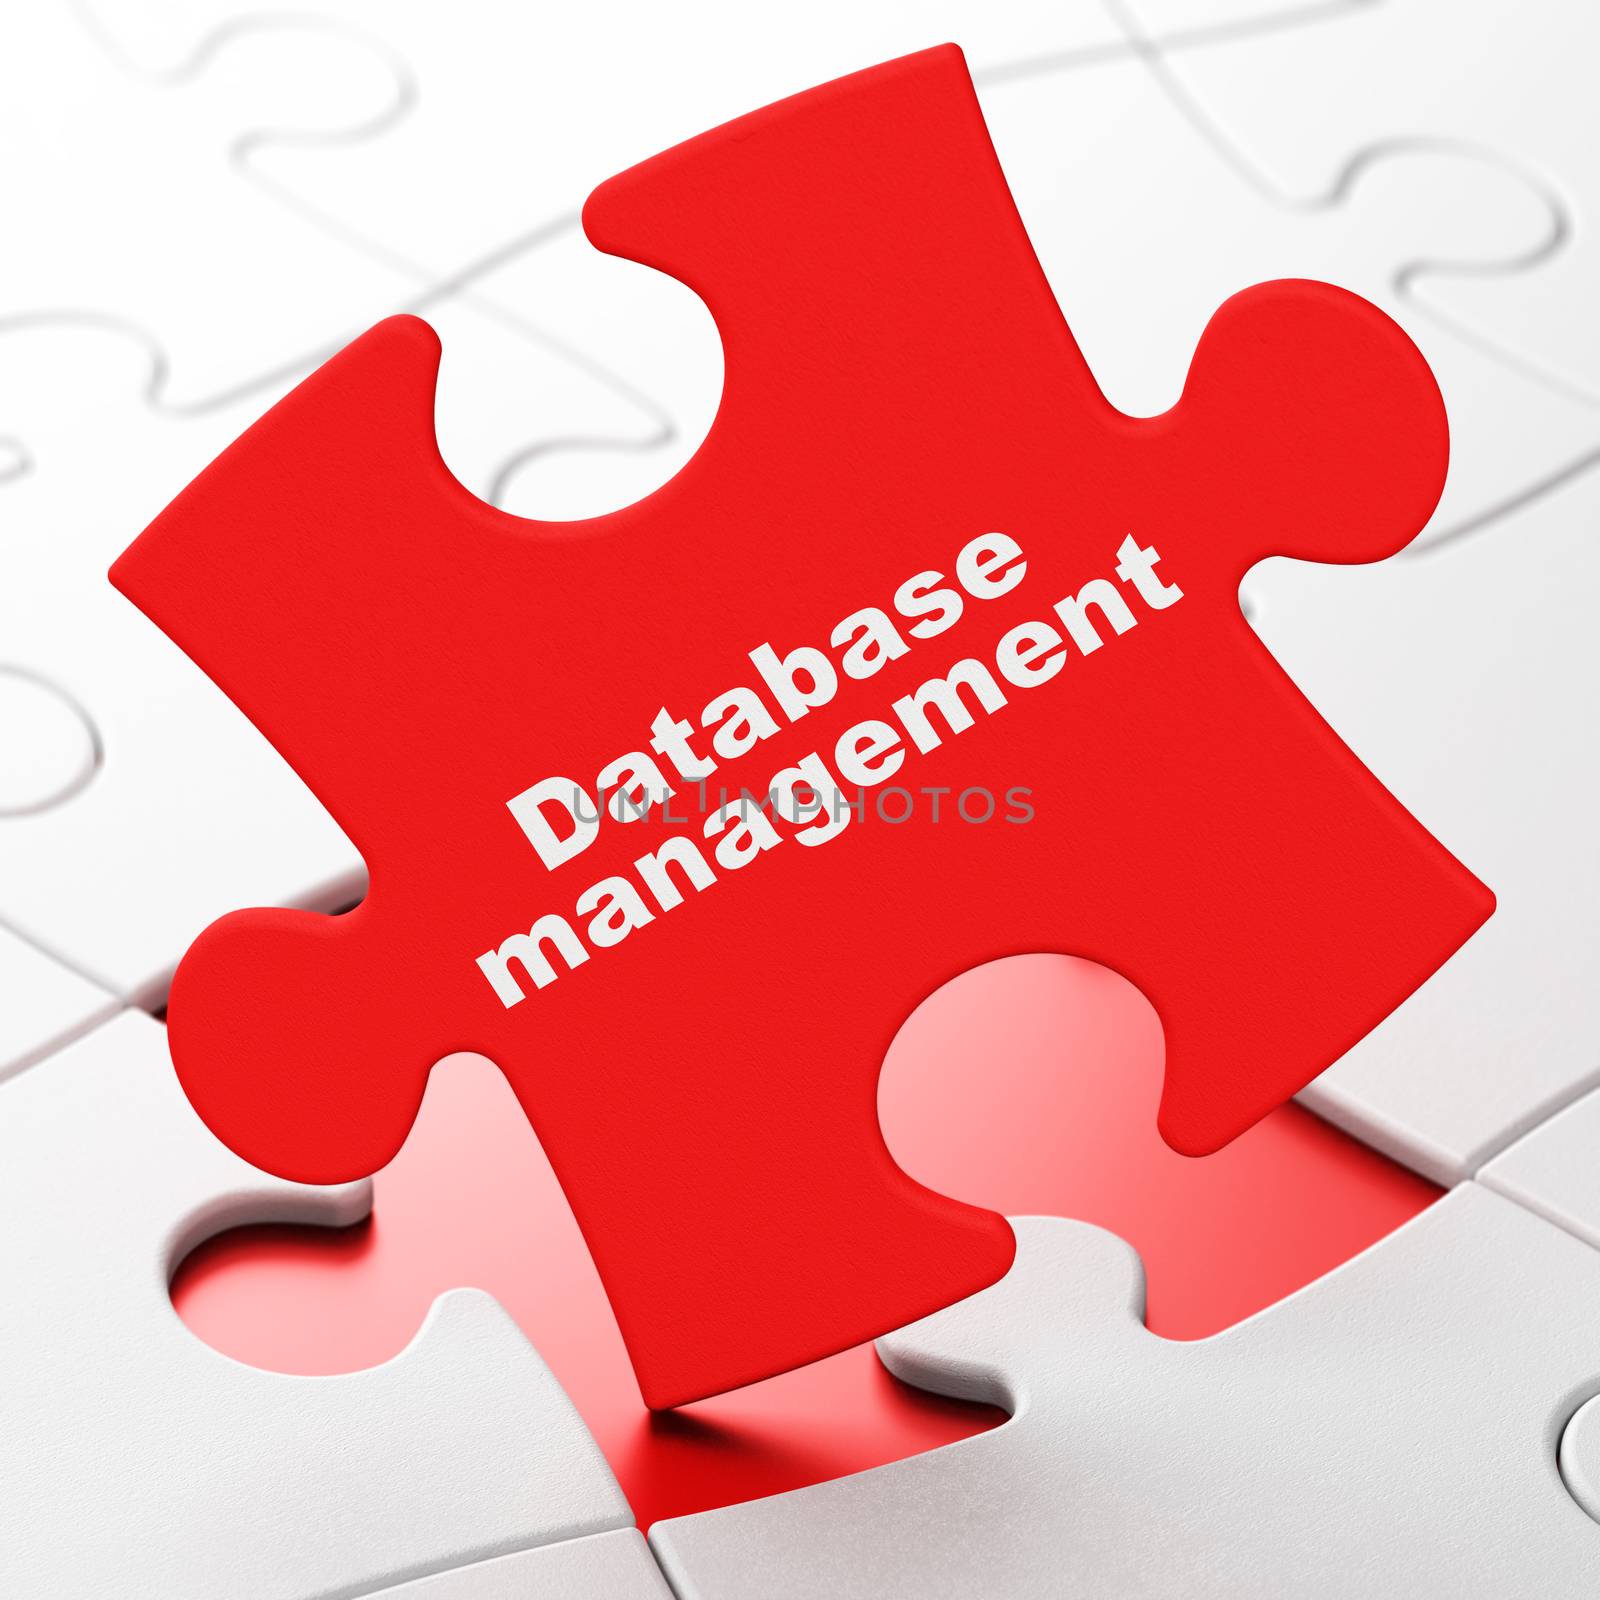 Database concept: Database Management on puzzle background by maxkabakov